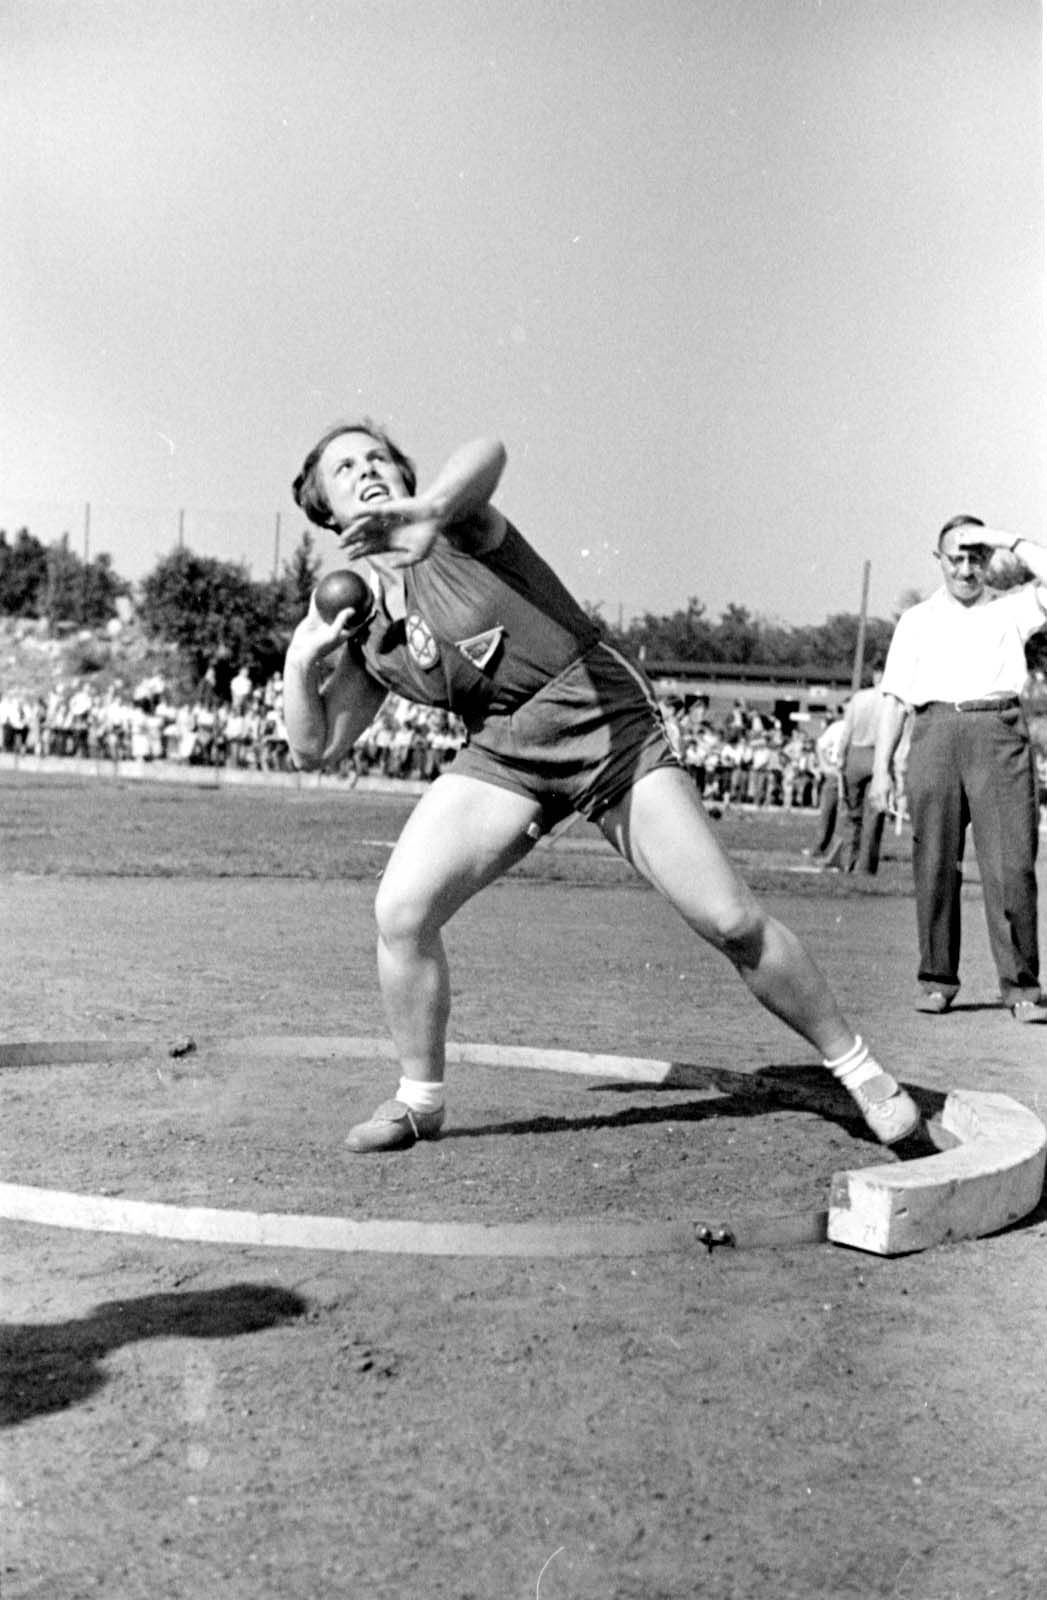 Berlín, Alemania, 1937. Selma Schulmann en el evento de lanzamiento de bala en los juegos deportivos internacionales "Bar Kojba", con la participación de "Hakoaj Viena"